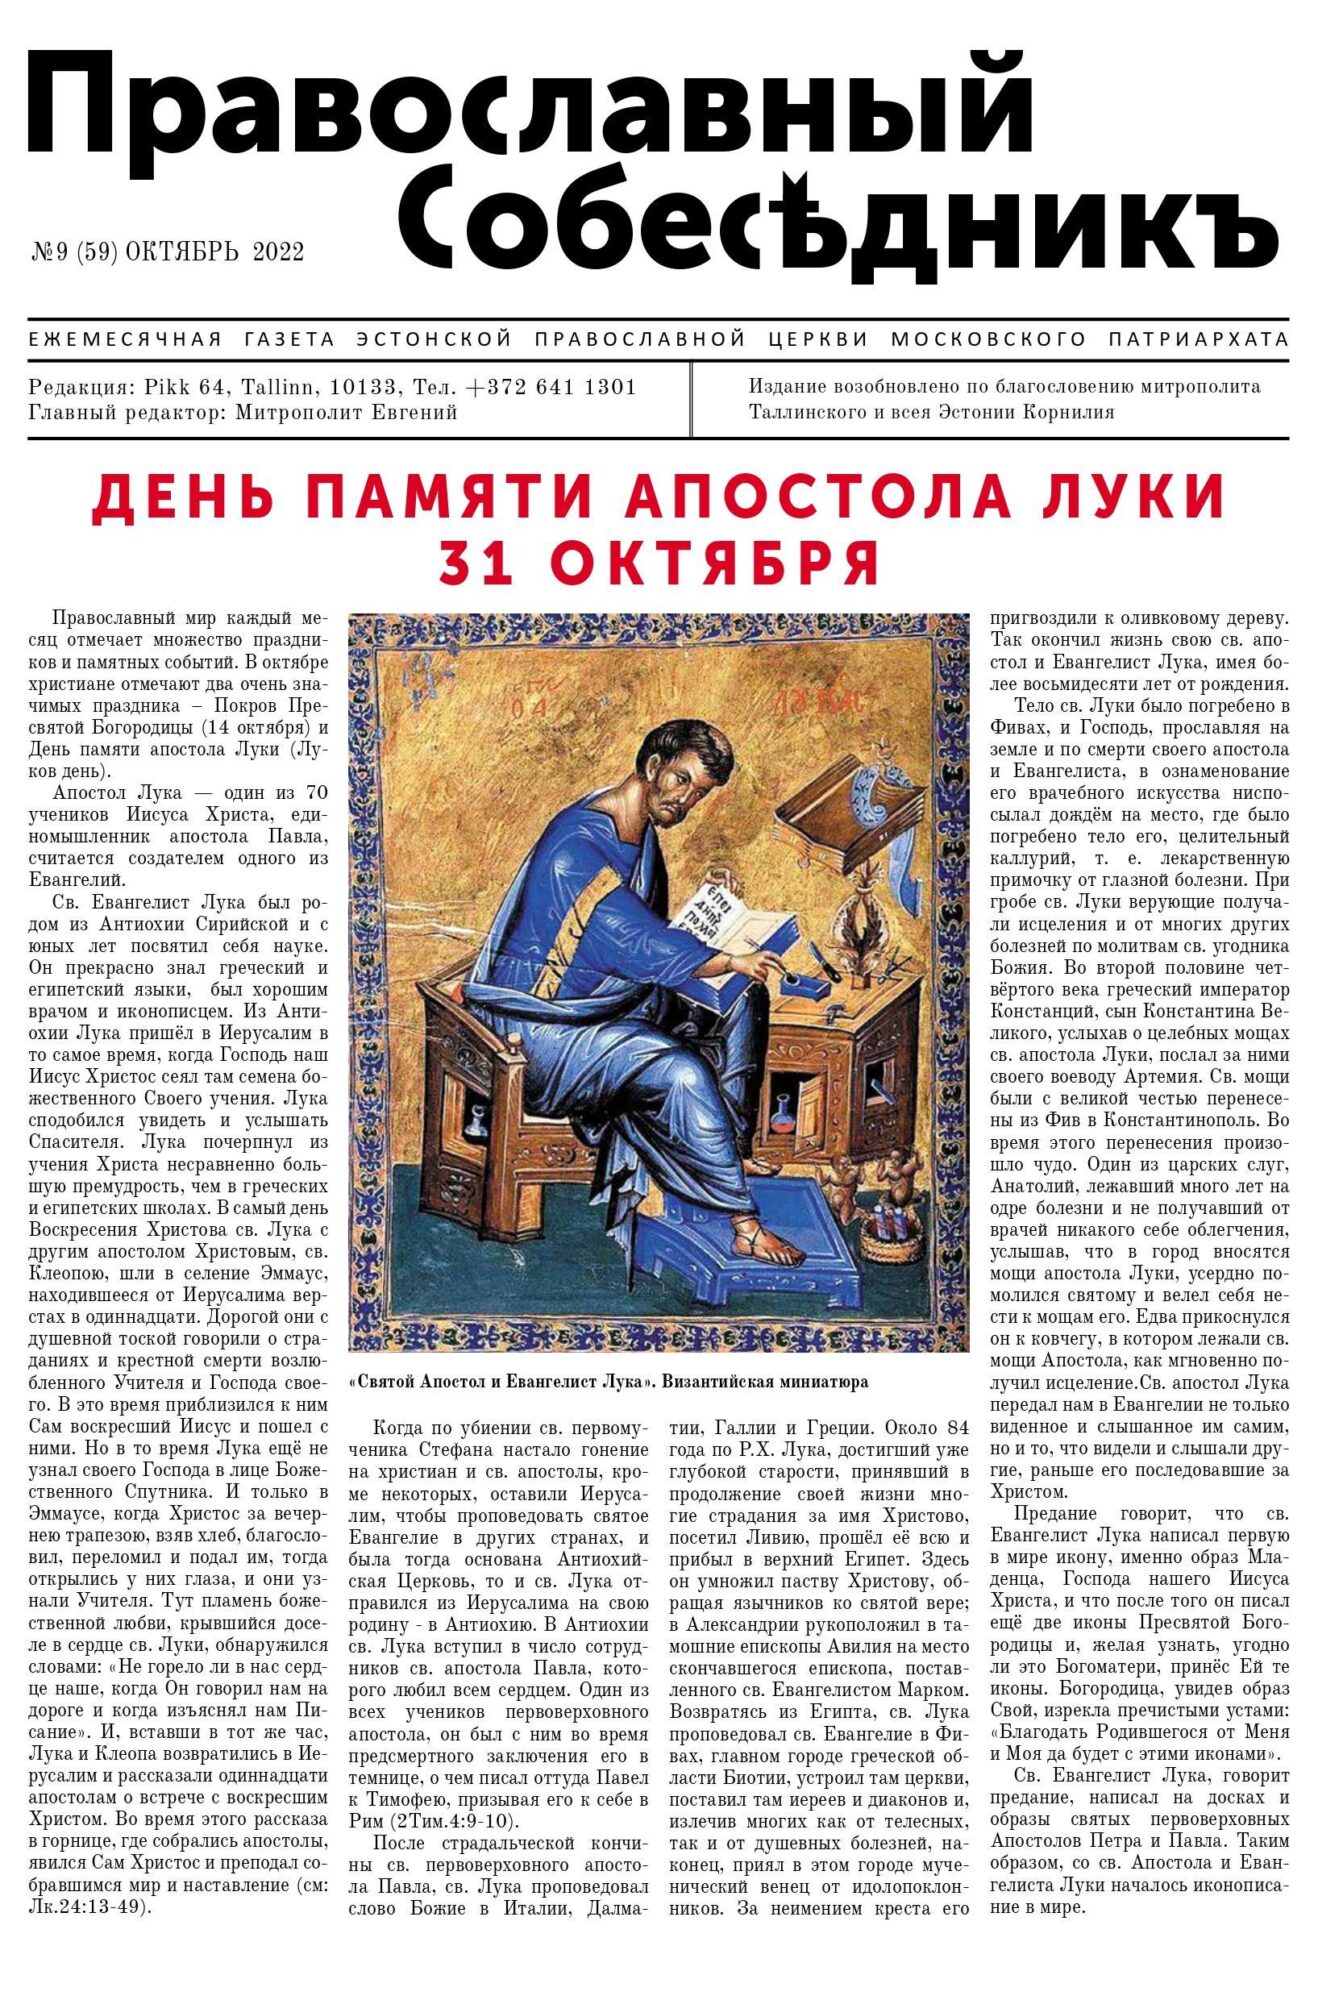 Православный Собеседник, октябрь 2022. Обложка